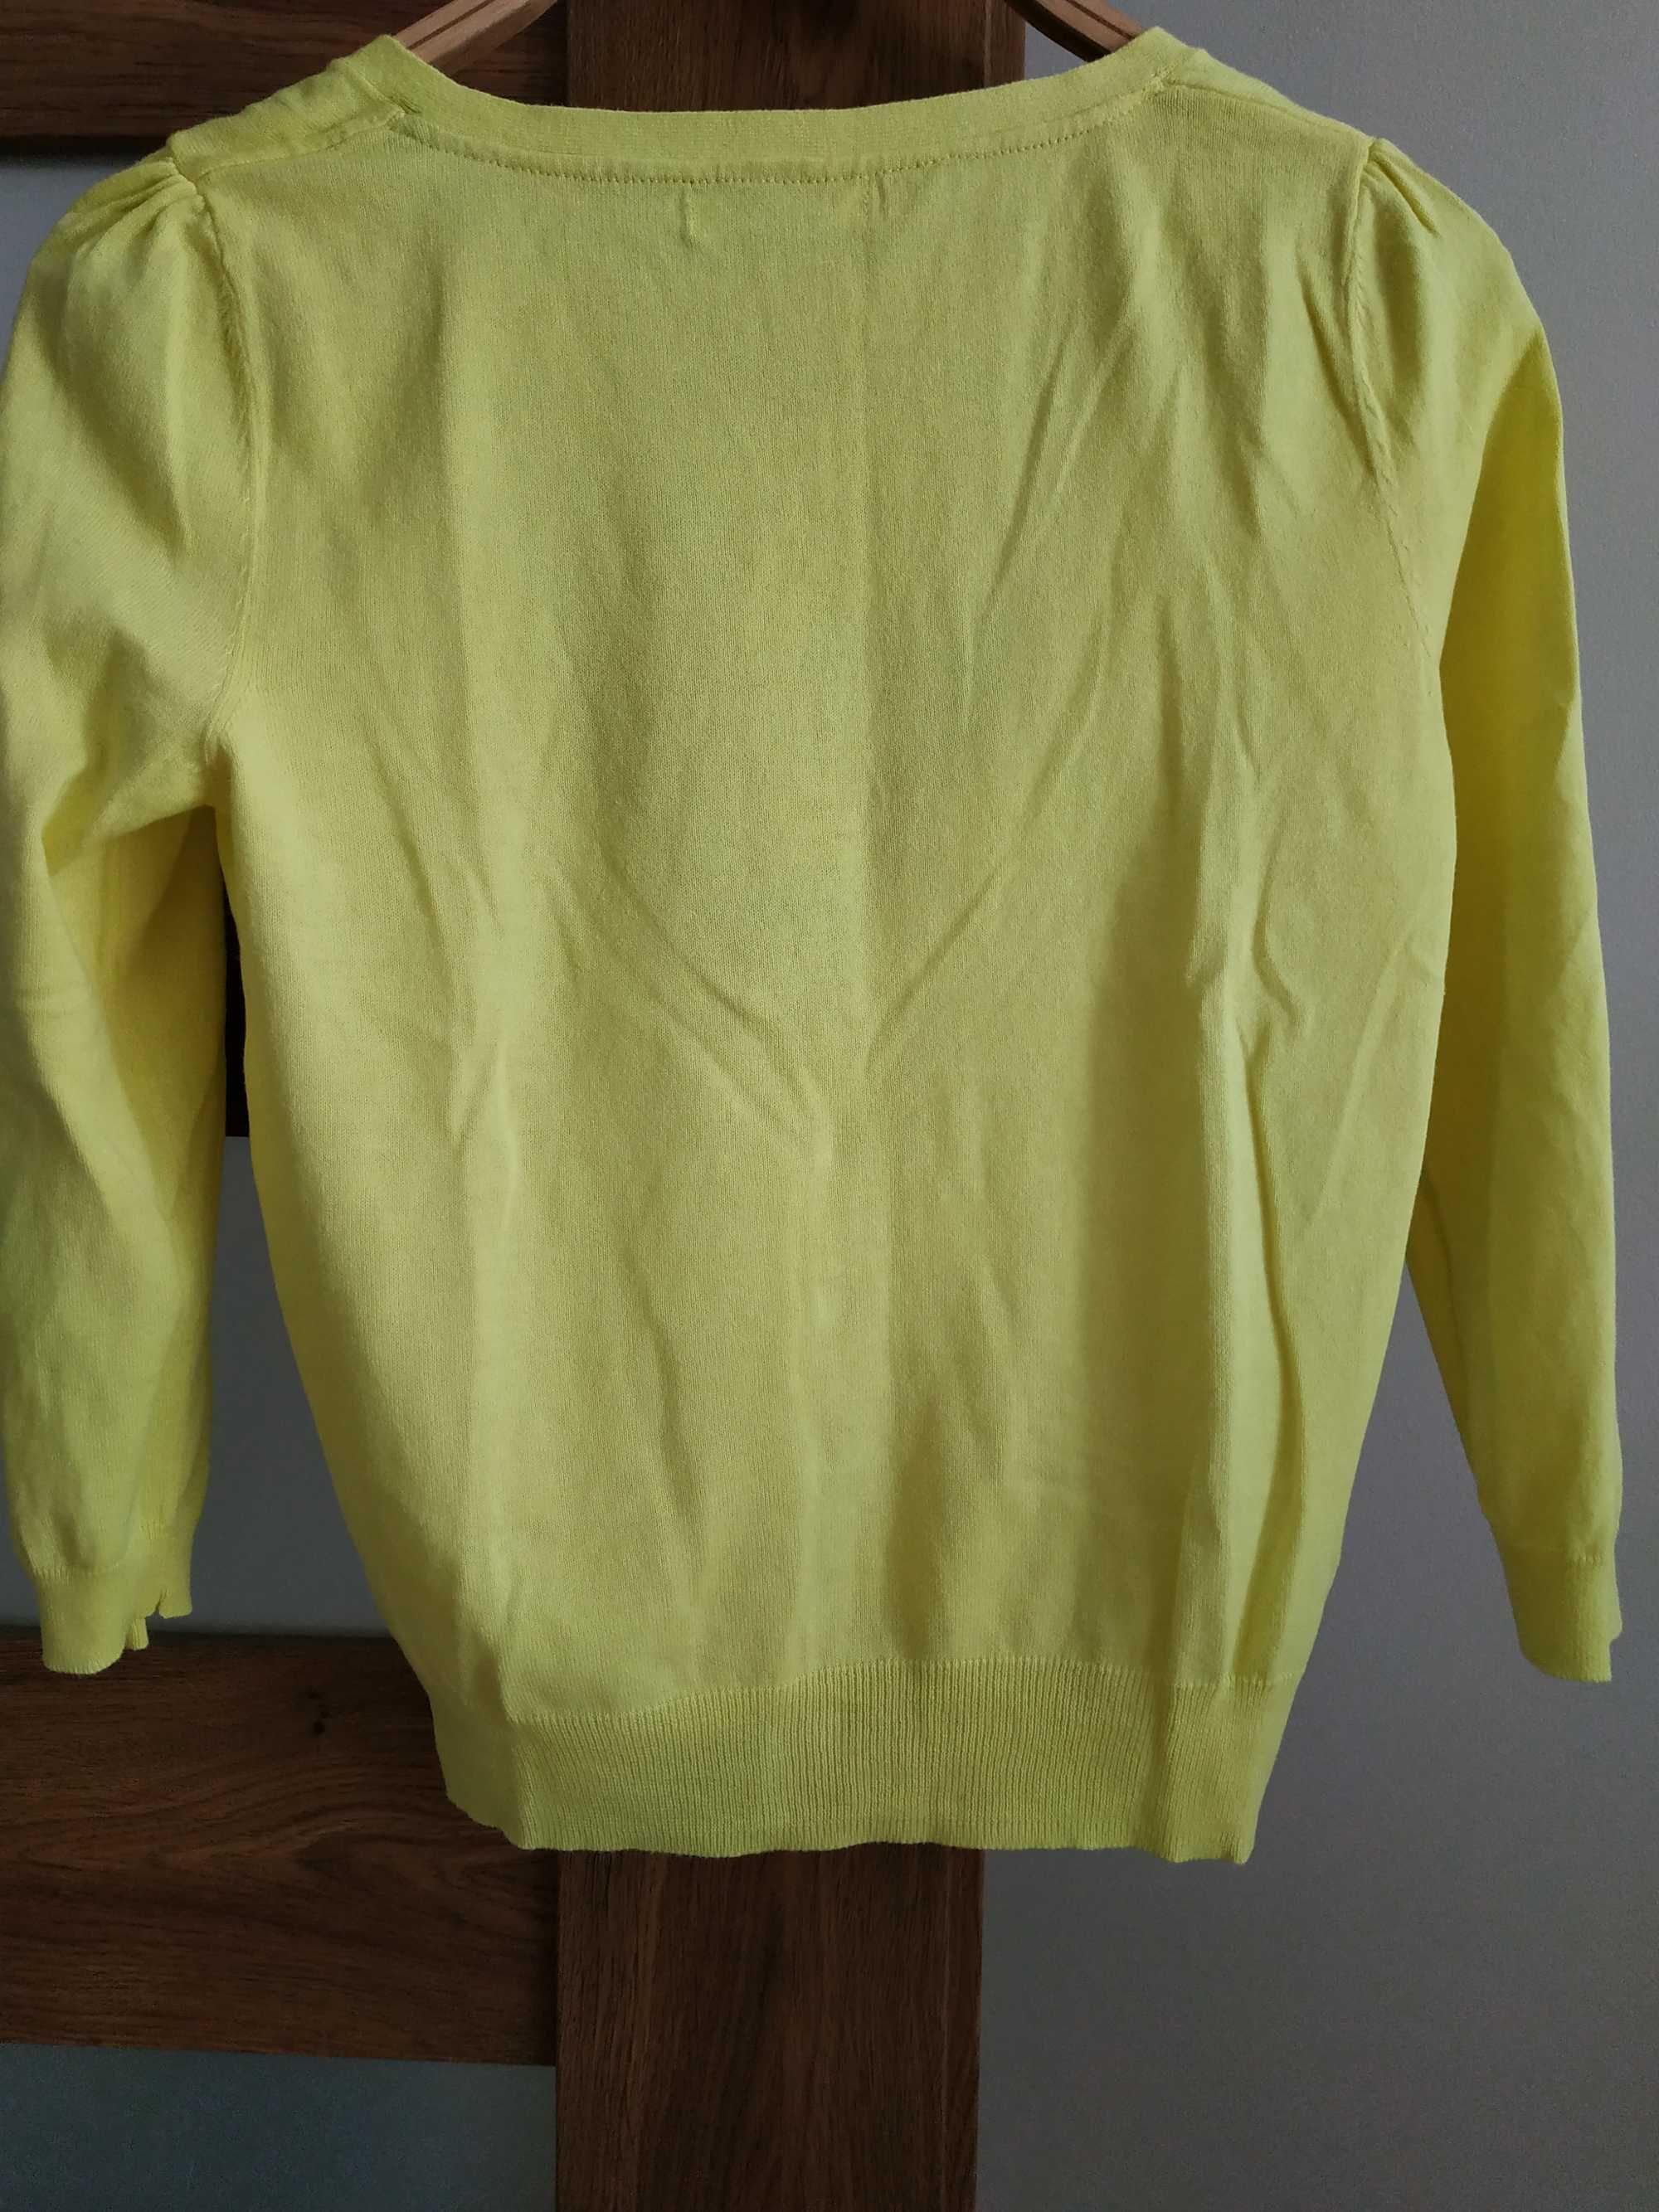 żółty sweter na guziki, z rękawem 3/4, promod, bawełna rozmiar s